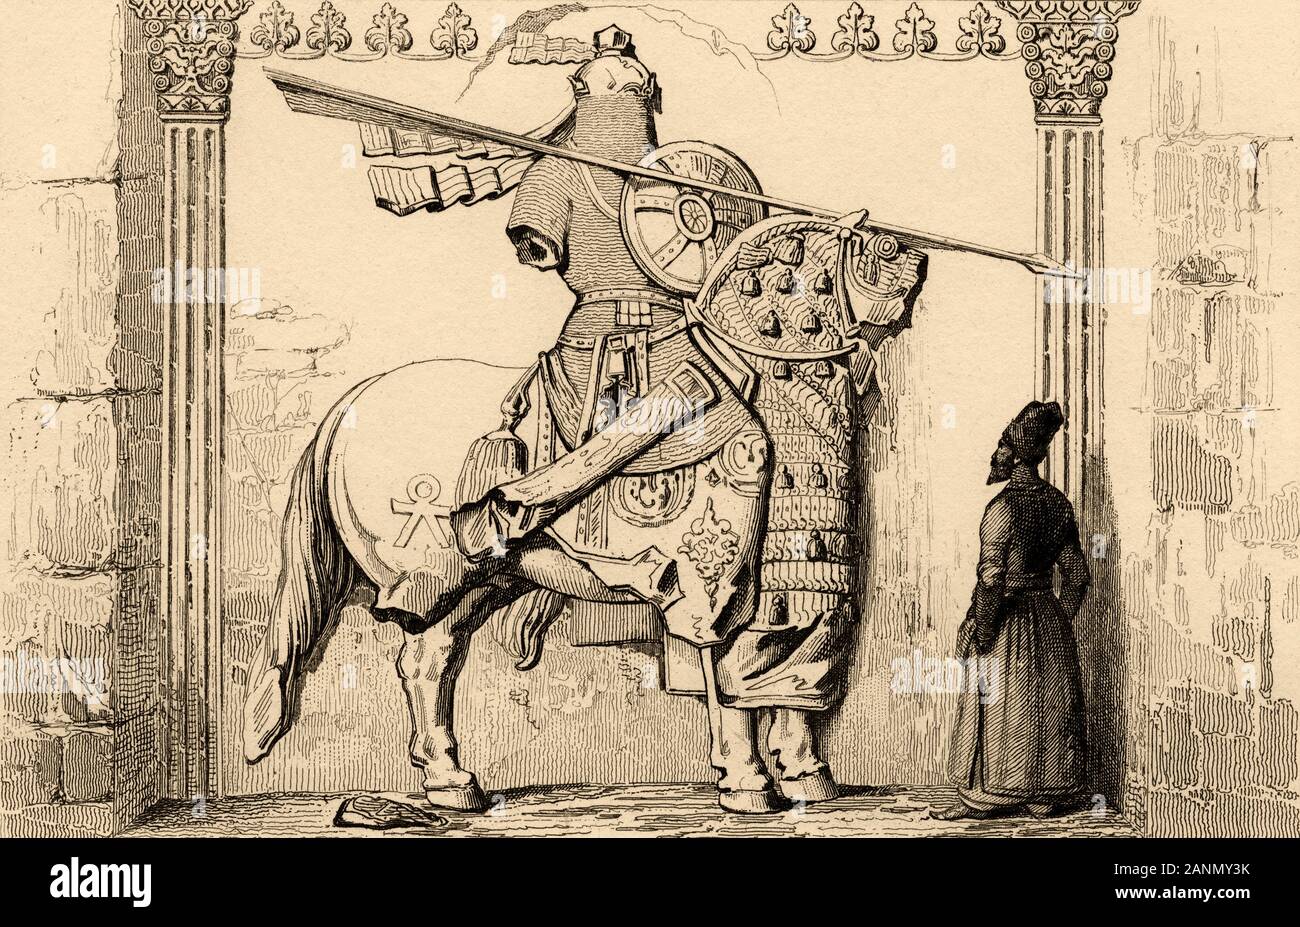 Détail d'une figure d'un homme monté sur un bon cheval. Reliefs d'Hosroe Rock II (590-628), l'empire sassanide de Perse. Taq-e Bostan, province Kermansha Banque D'Images